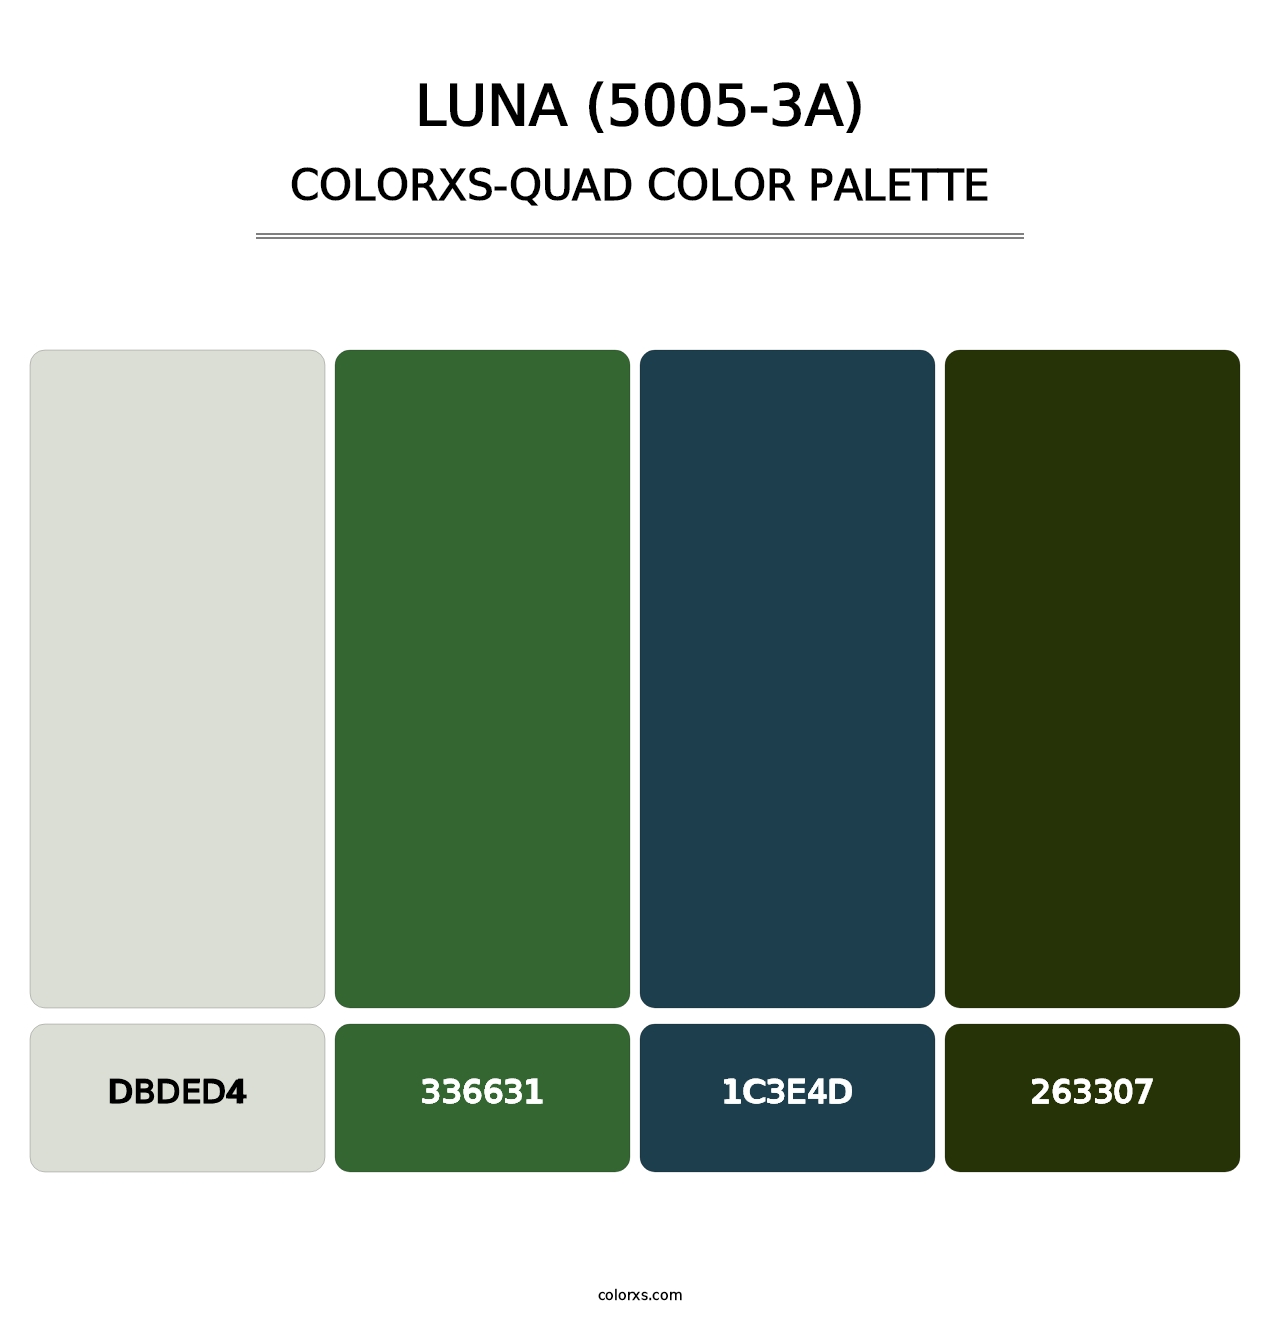 Luna (5005-3A) - Colorxs Quad Palette